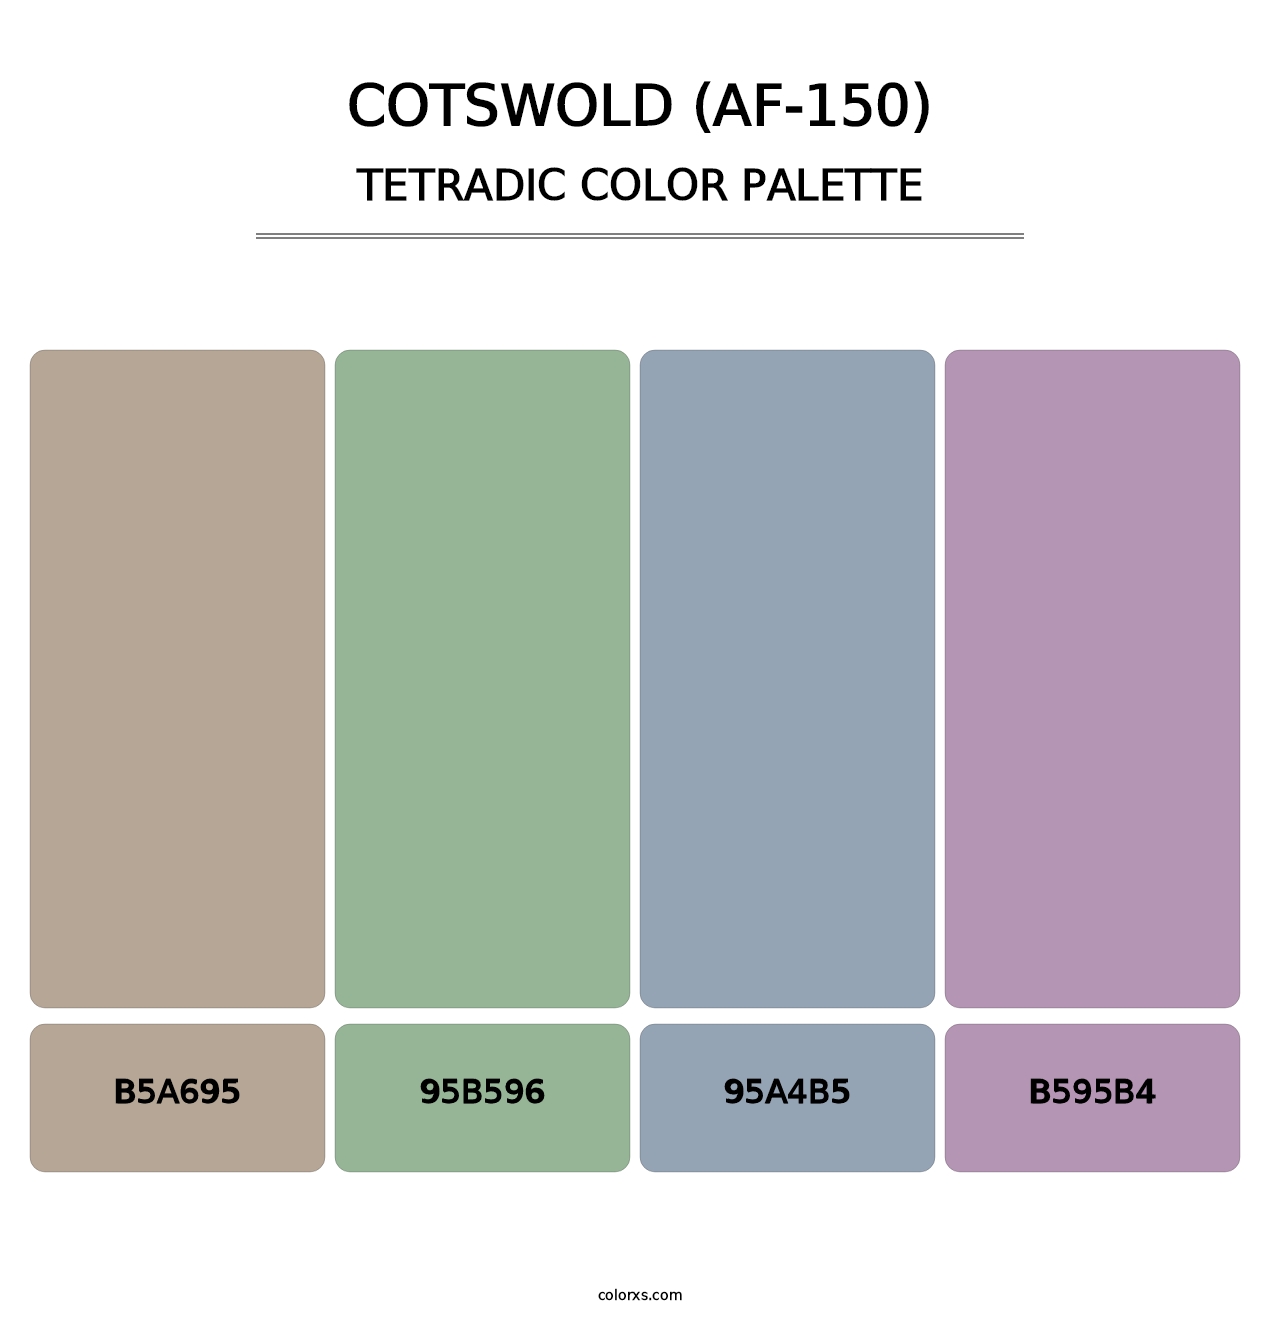 Cotswold (AF-150) - Tetradic Color Palette